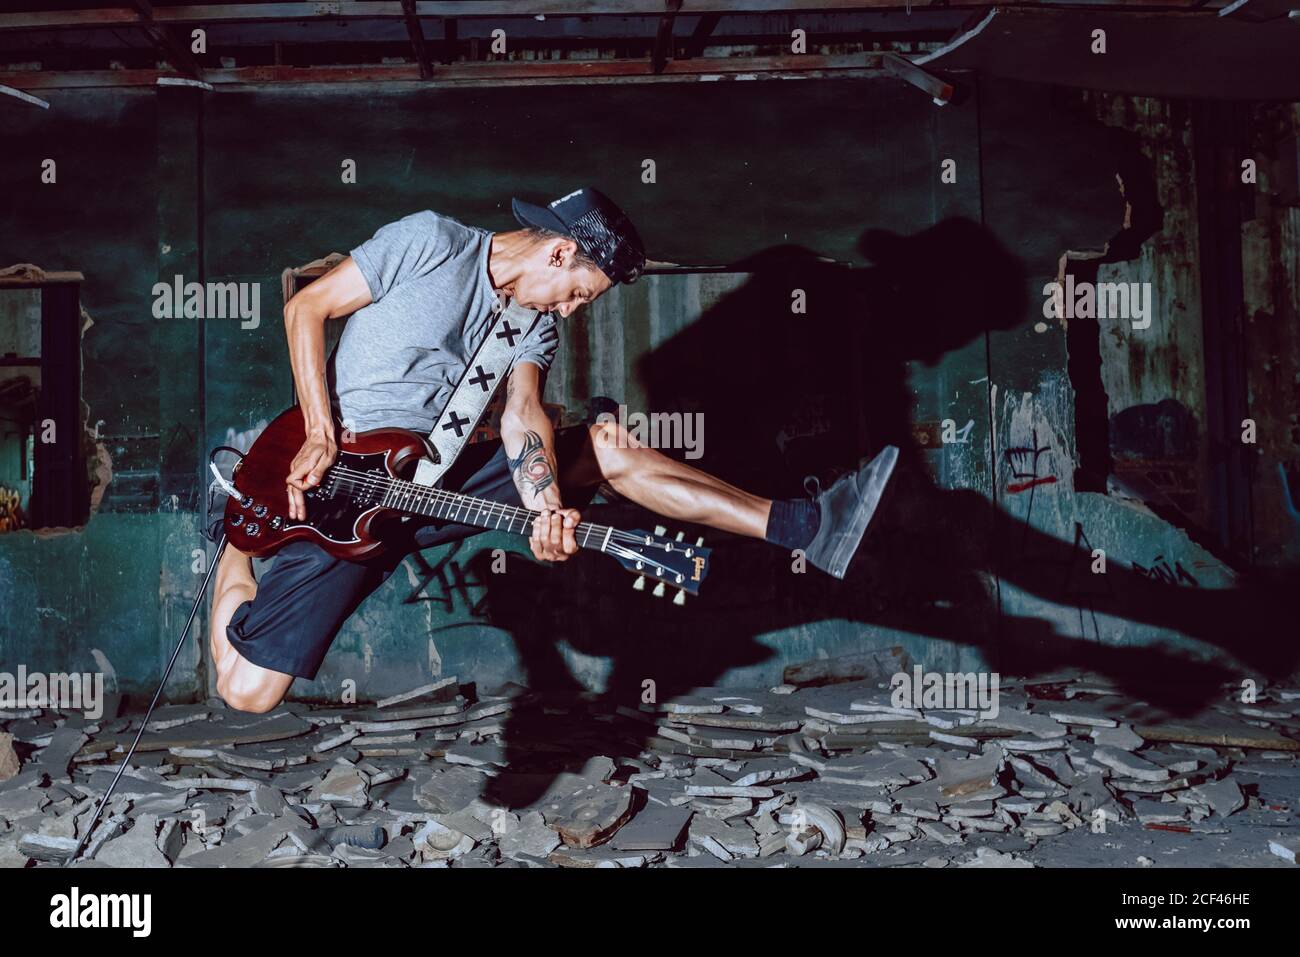 Il musicista maschile salta in modo espressivo mentre suona la chitarra elettrica al buio sala in rovina grugnosa Foto Stock